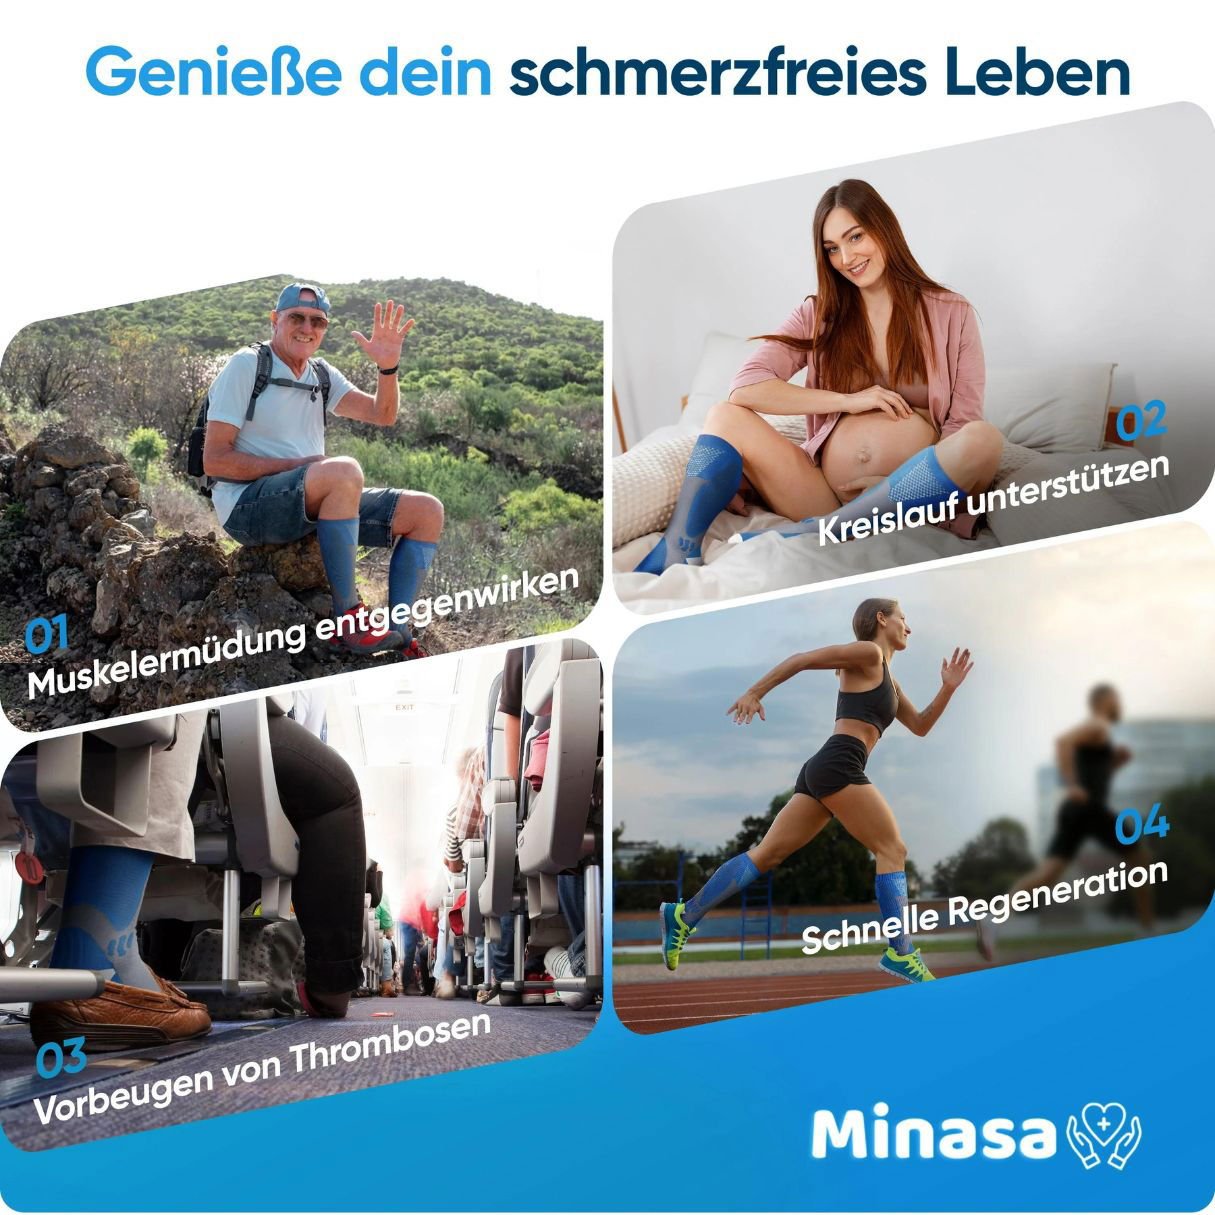 Minasa - Kompressionsstrümpfe für schmerzfreie Beine und Füße